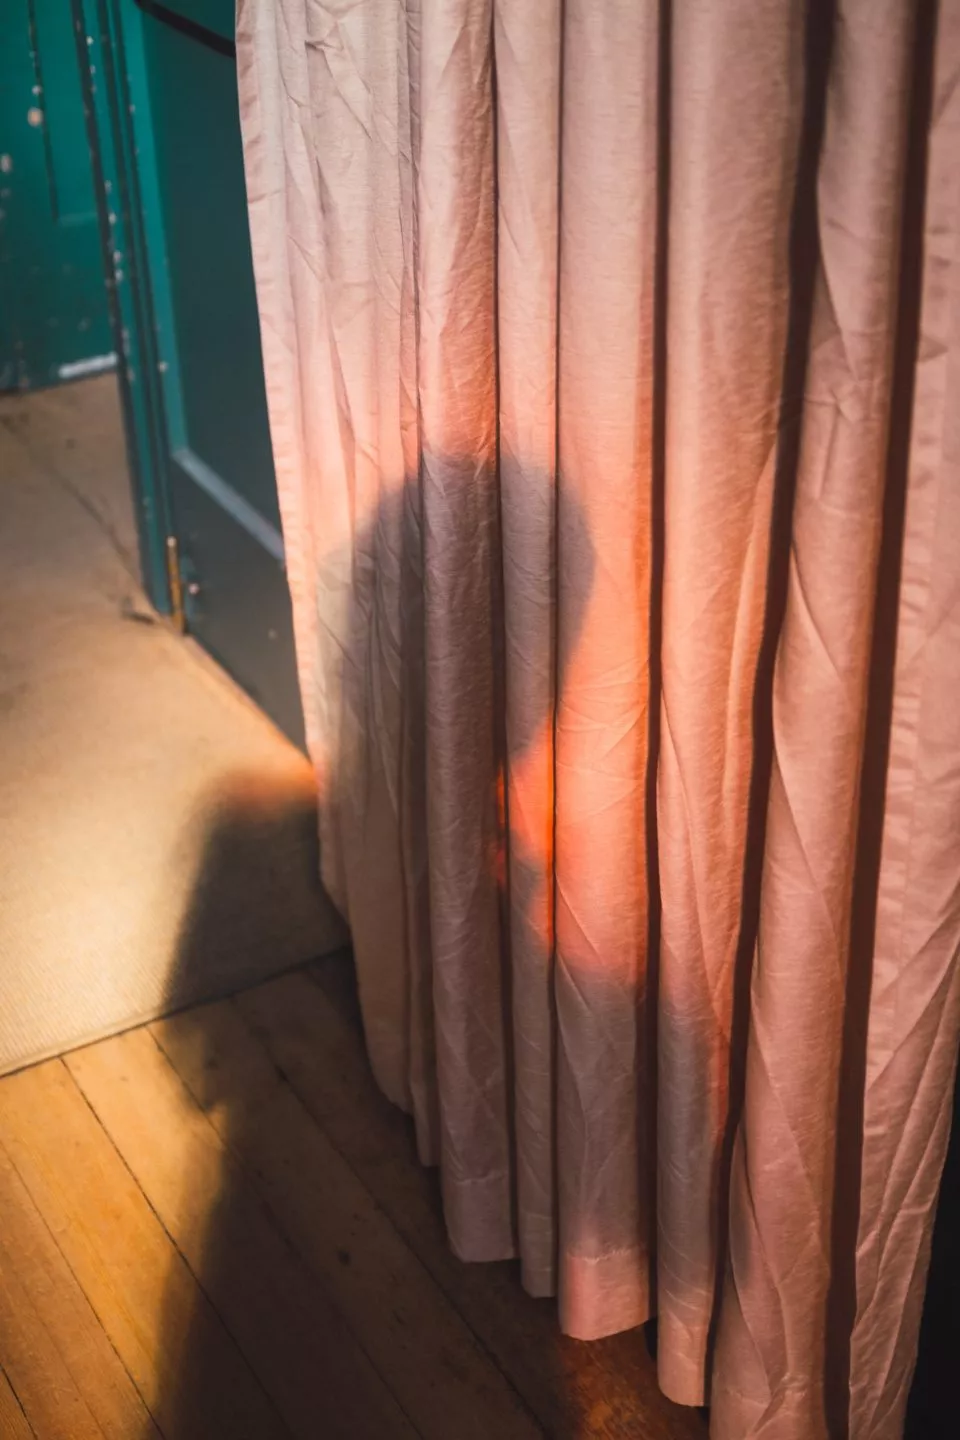 Shadow on a curtain